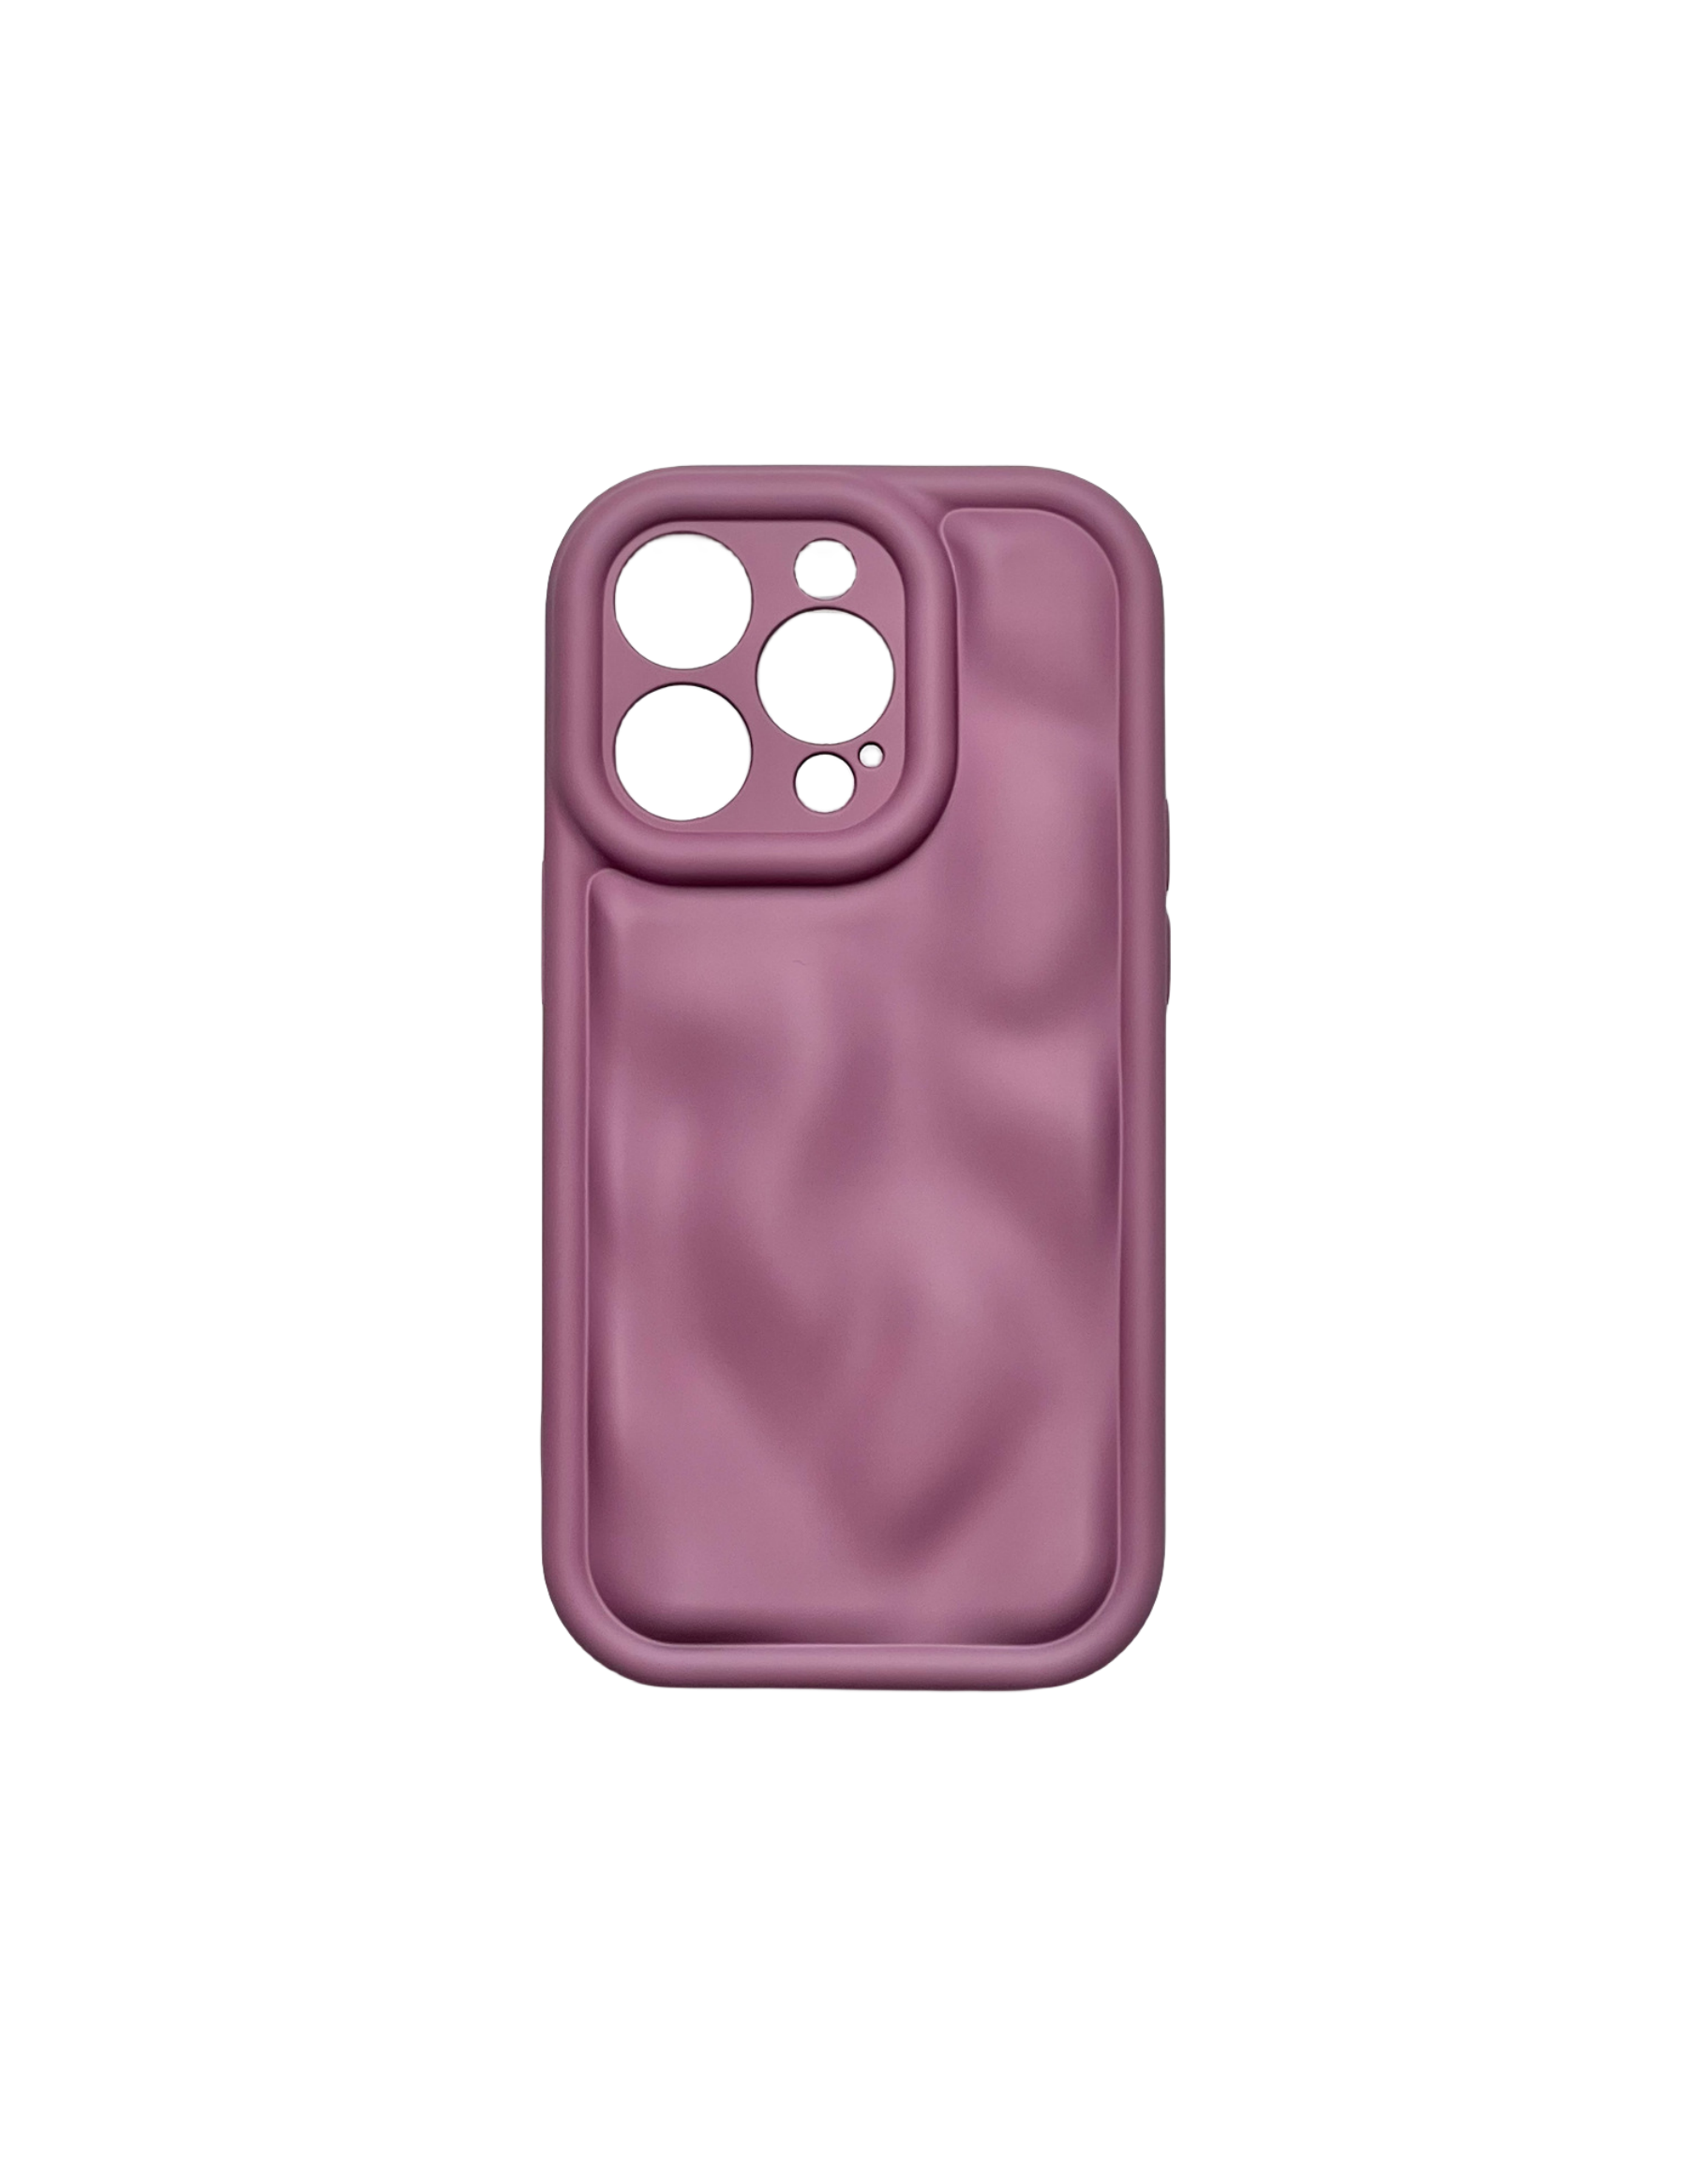 iPhone TPU Meteorite phone case